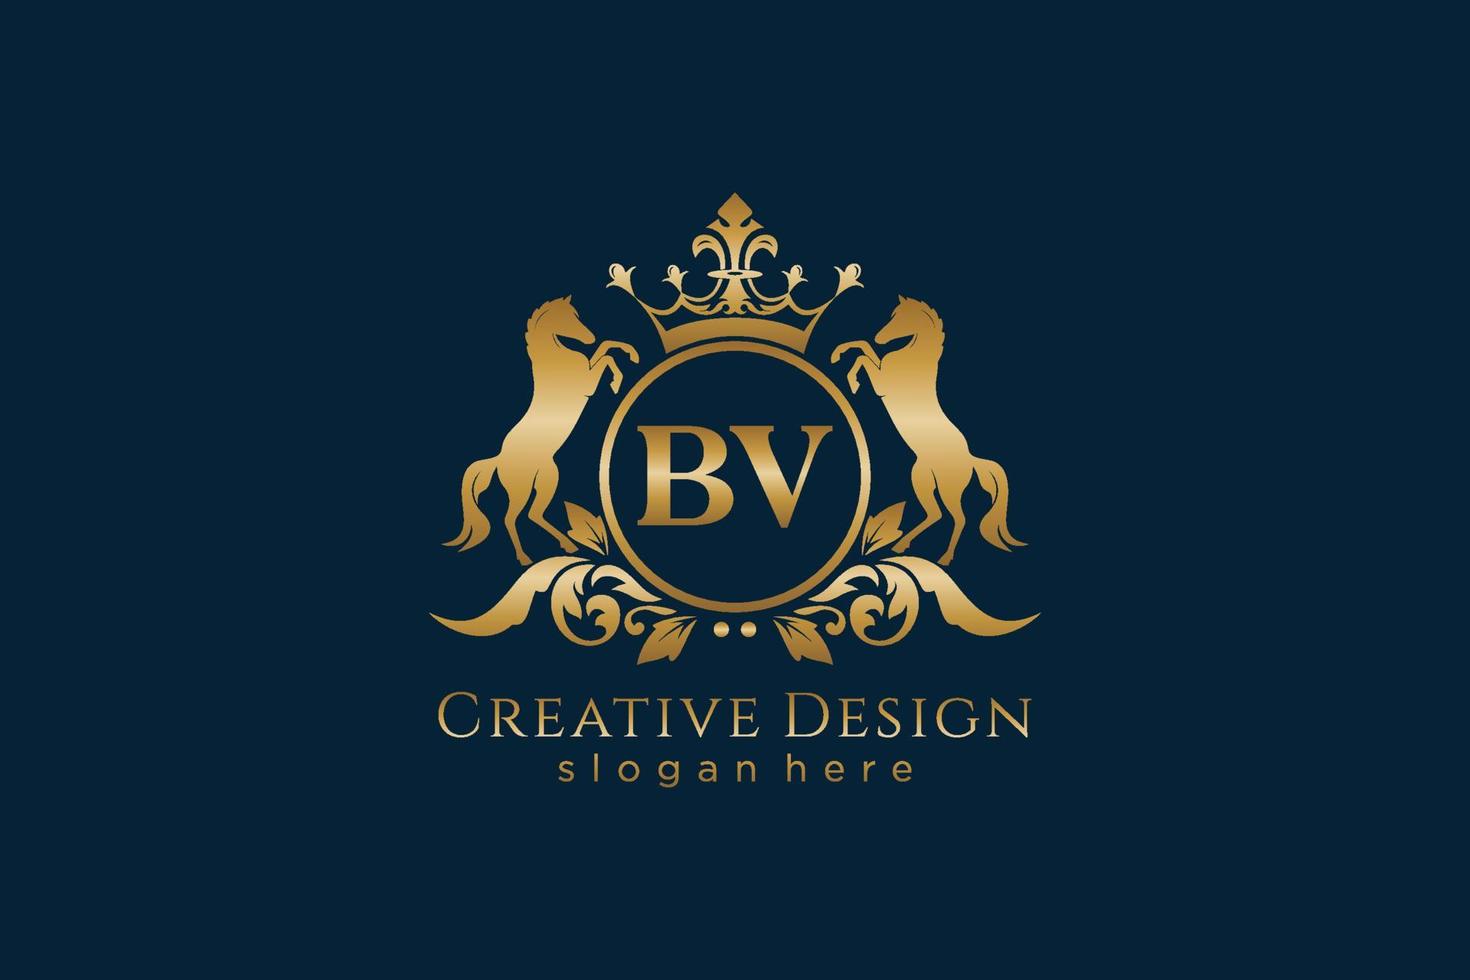 crête dorée rétro bv initiale avec cercle et deux chevaux, modèle de badge avec volutes et couronne royale - parfait pour les projets de marque de luxe vecteur